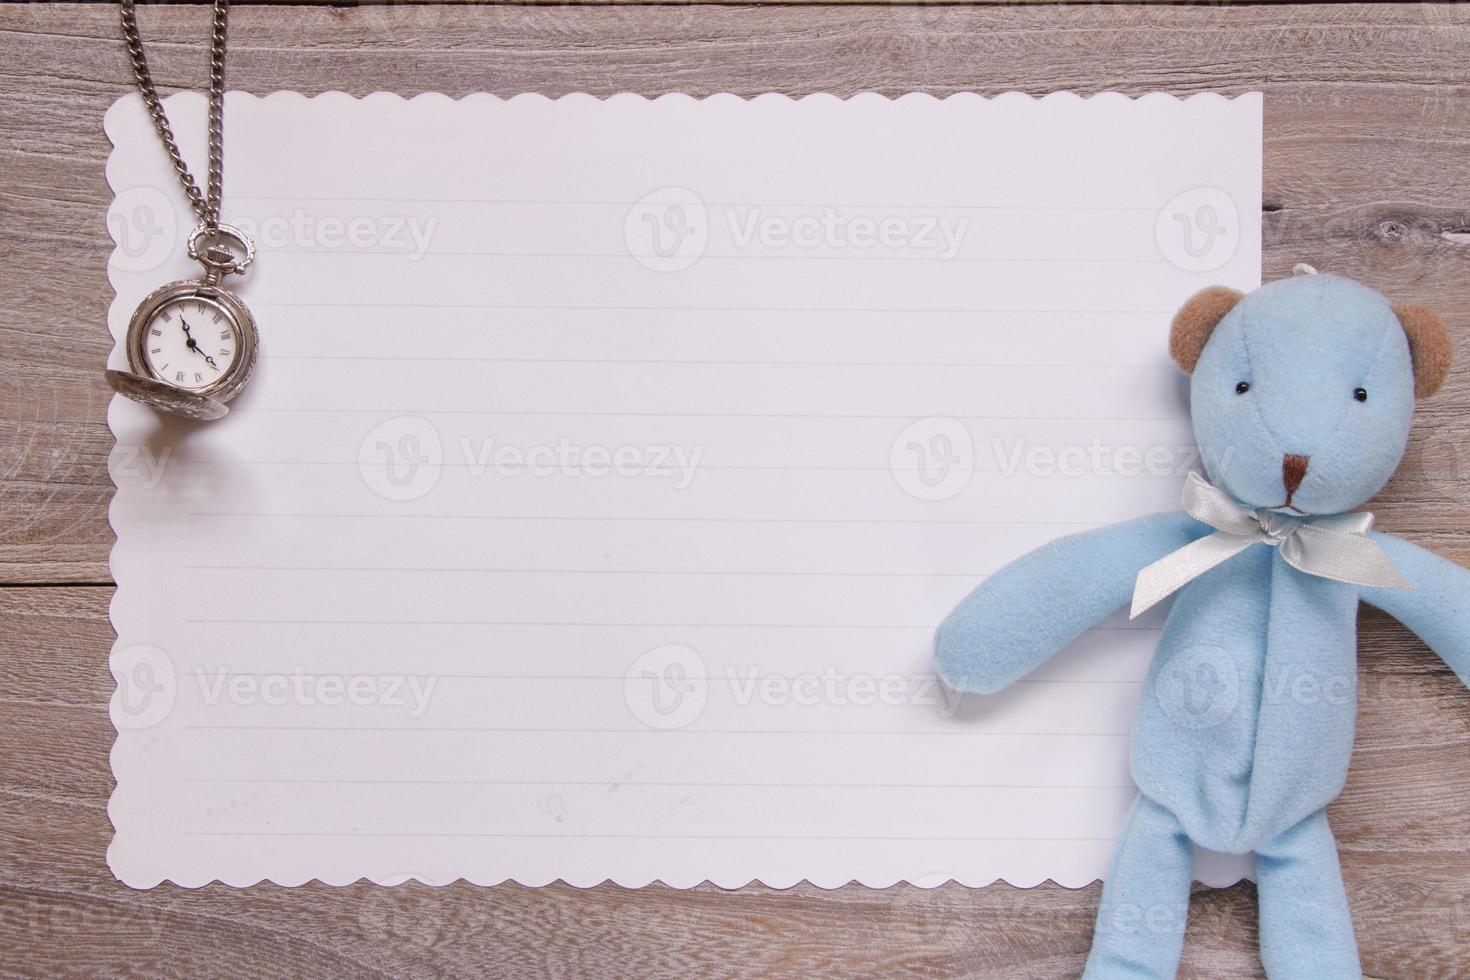 tavolo in legno carta da lettere bianca orologio da tasca bambola orso blu foto